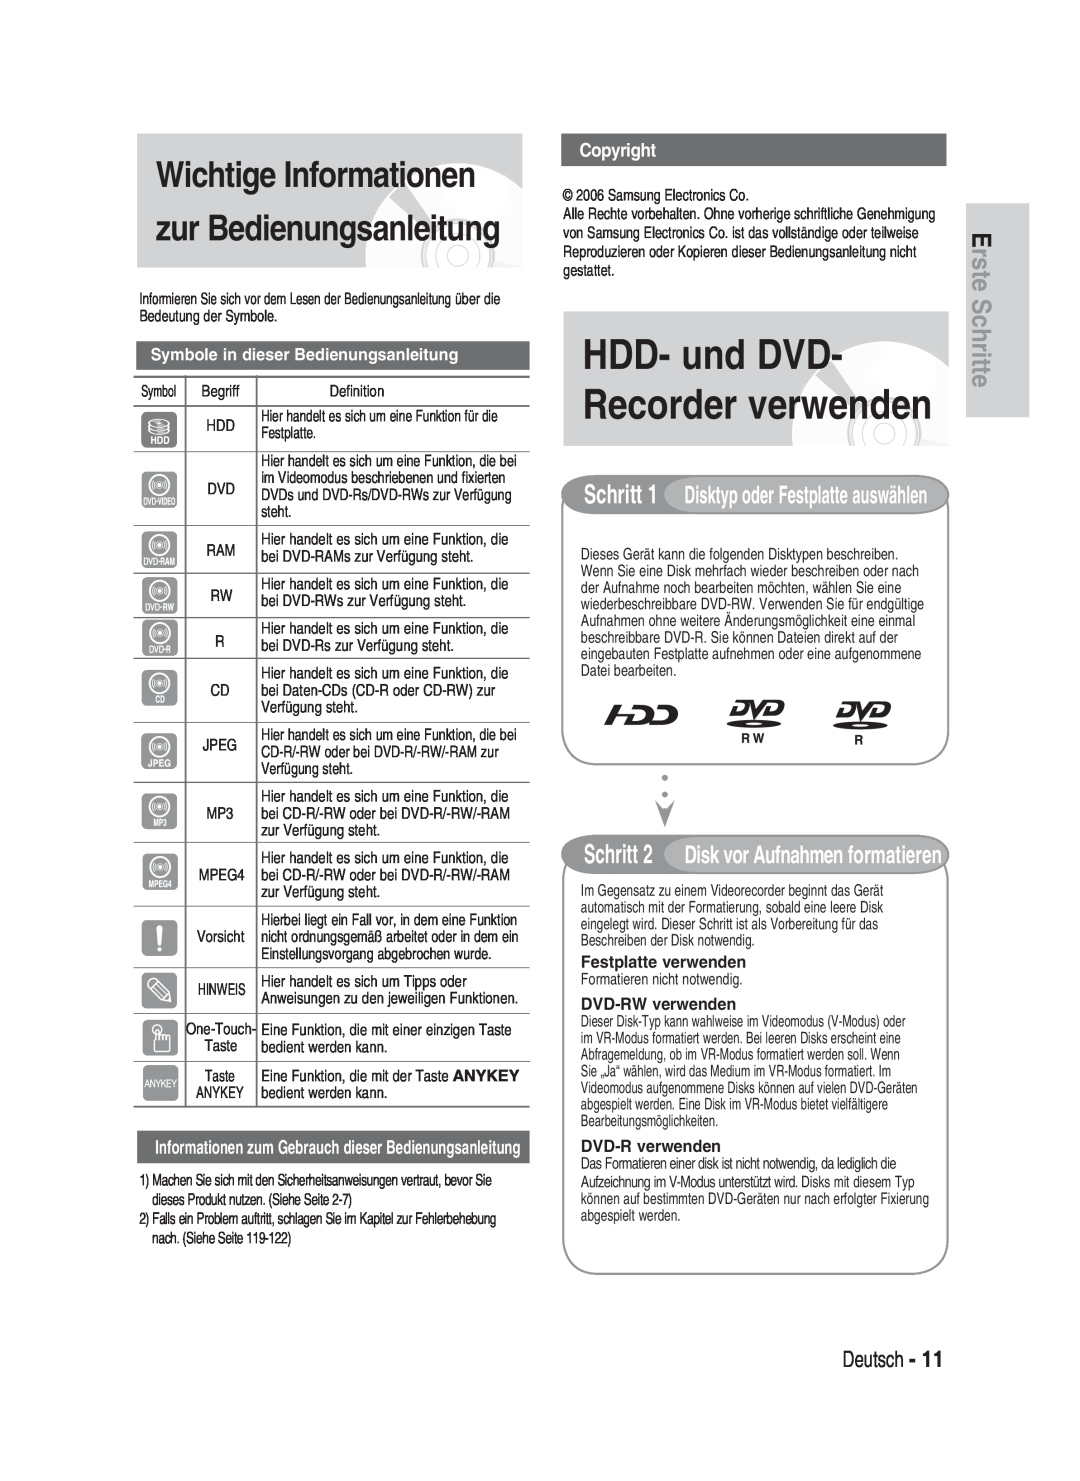 Samsung DVD-HR730/XEG HDD- und DVD, Recorder verwenden, Wichtige Informationen, zur Bedienungsanleitung, Copyright, Erste 